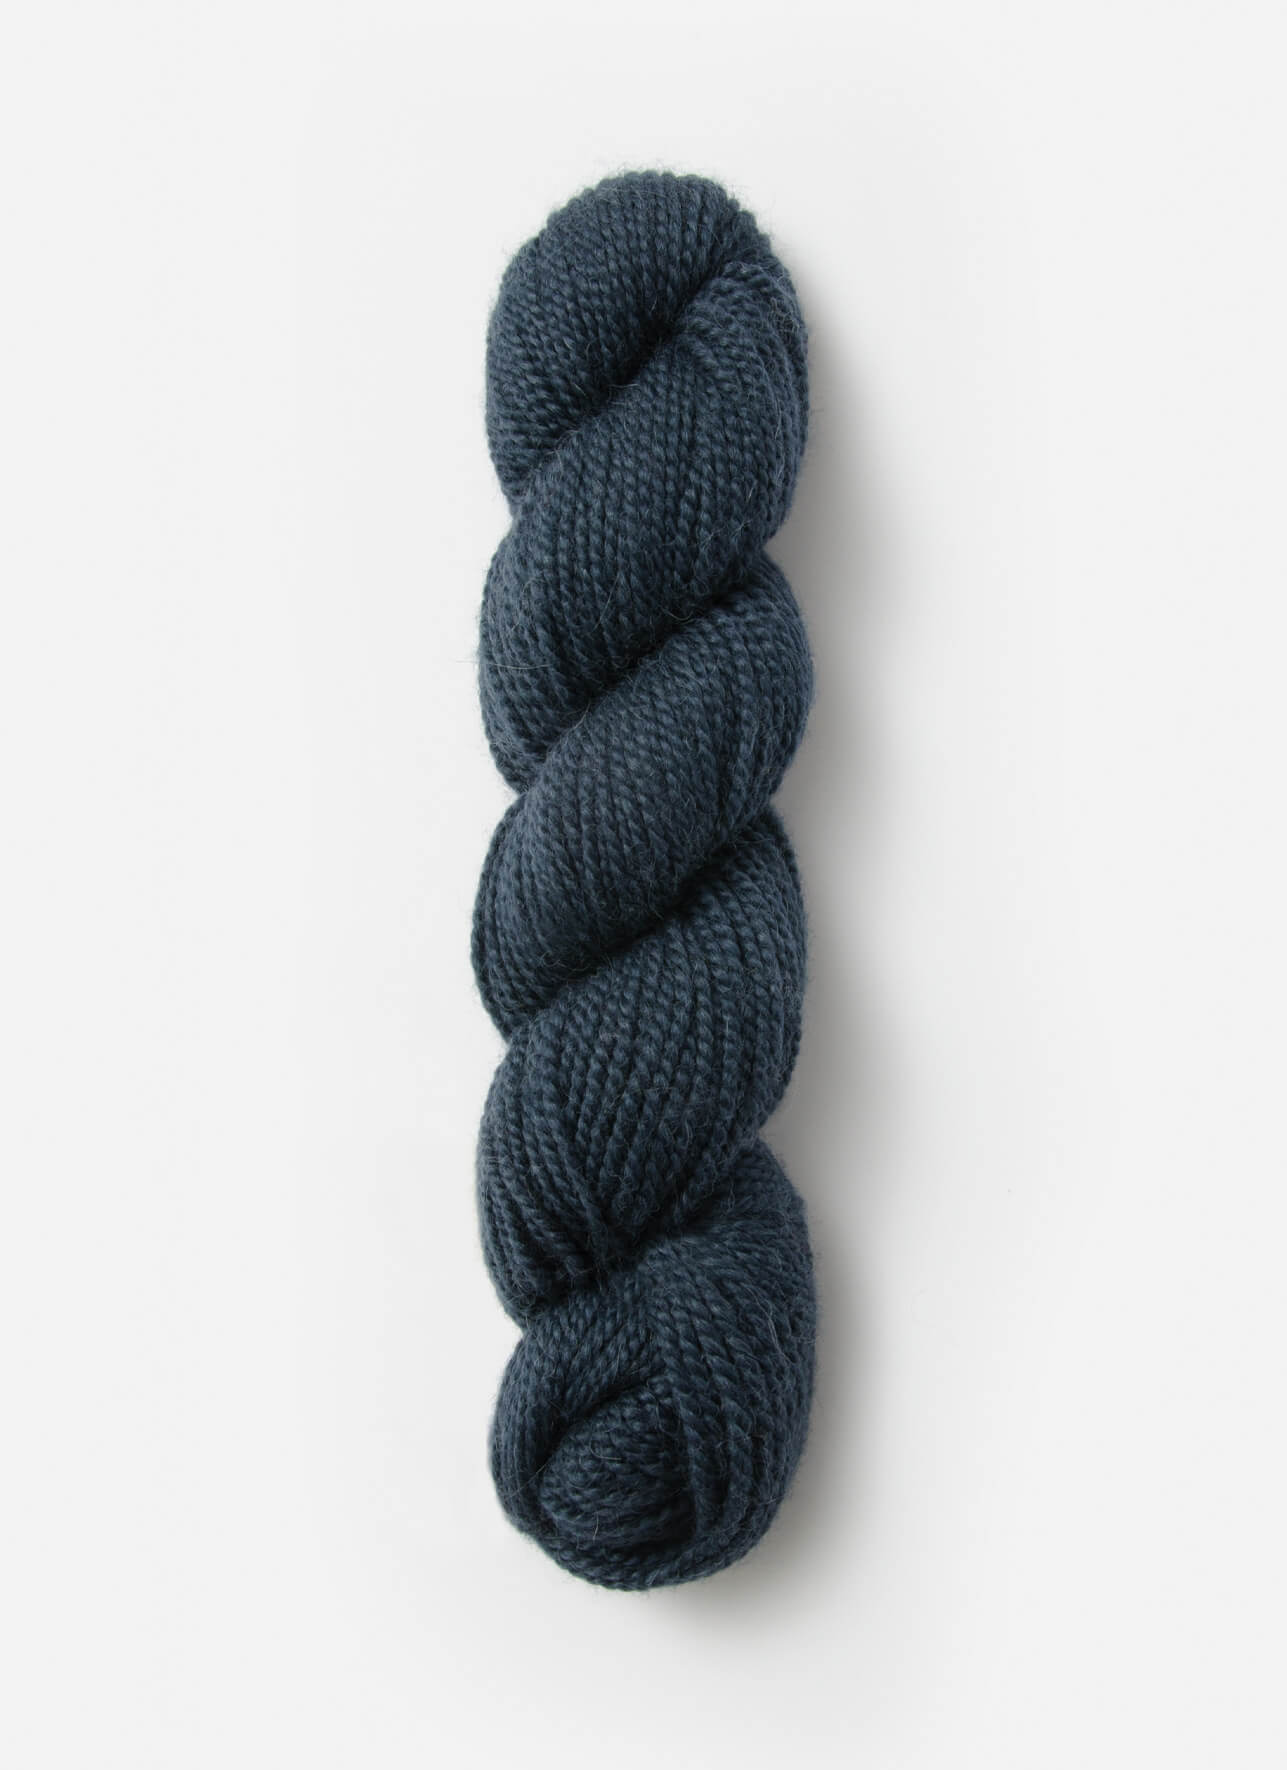 Blue Sky Fibers Alpaca Silk Yarn at Fabulous Yarn